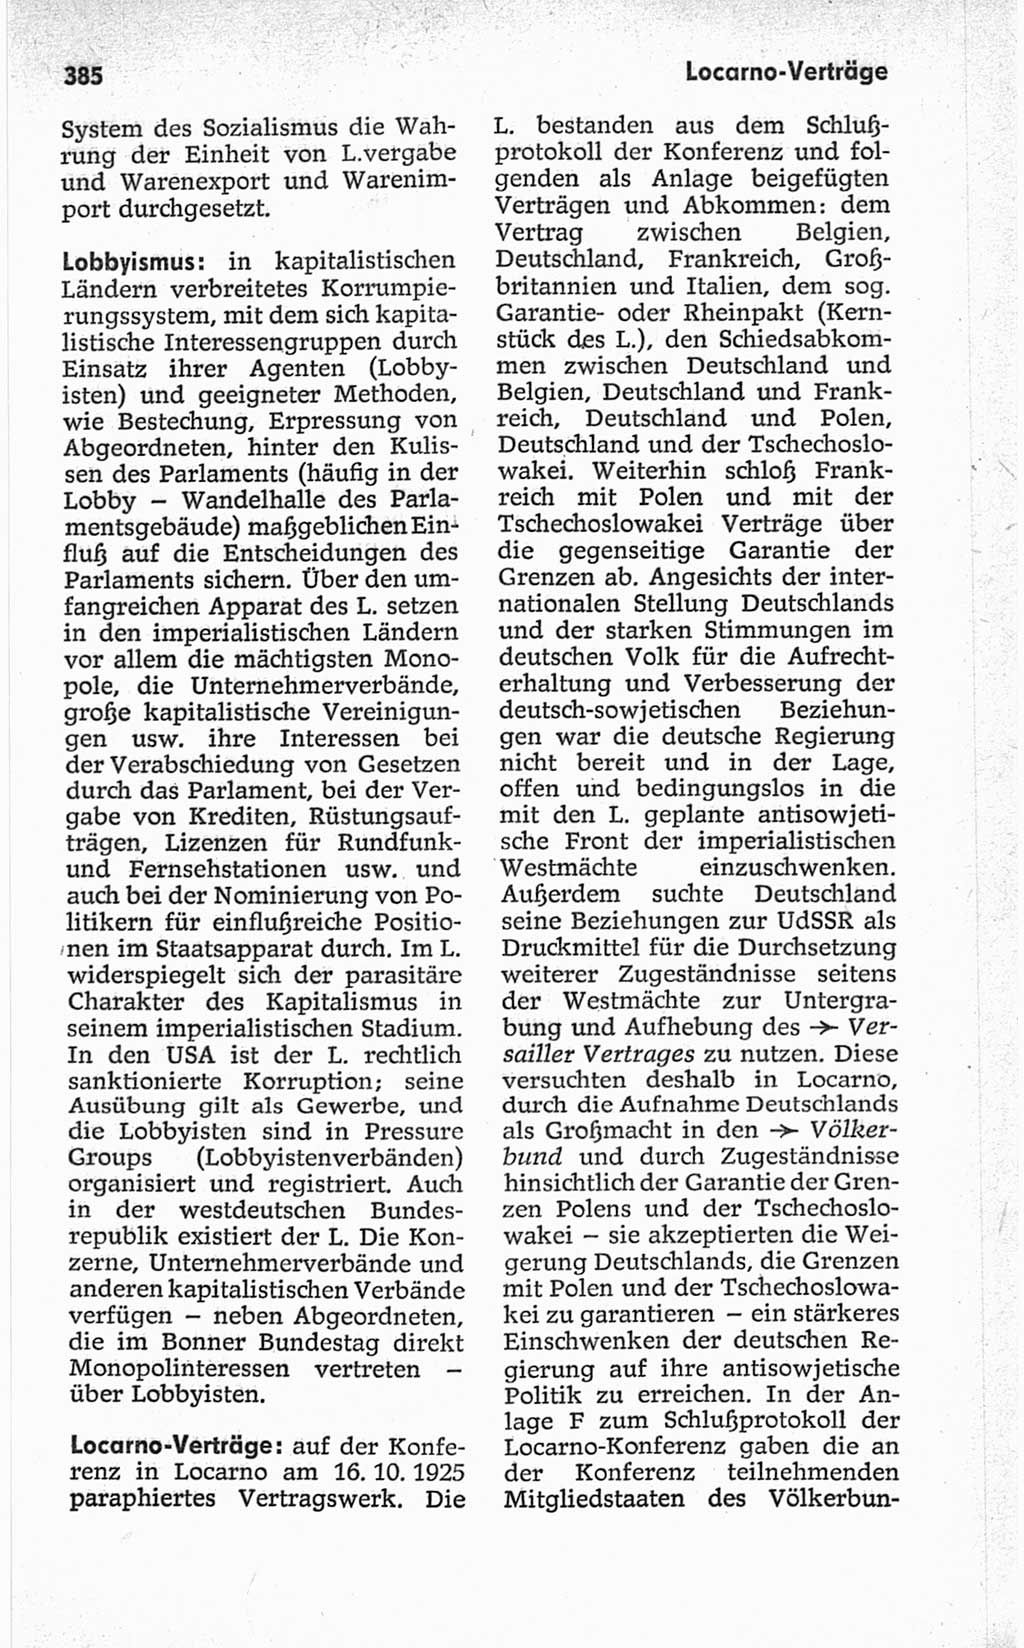 Kleines politisches Wörterbuch [Deutsche Demokratische Republik (DDR)] 1967, Seite 385 (Kl. pol. Wb. DDR 1967, S. 385)